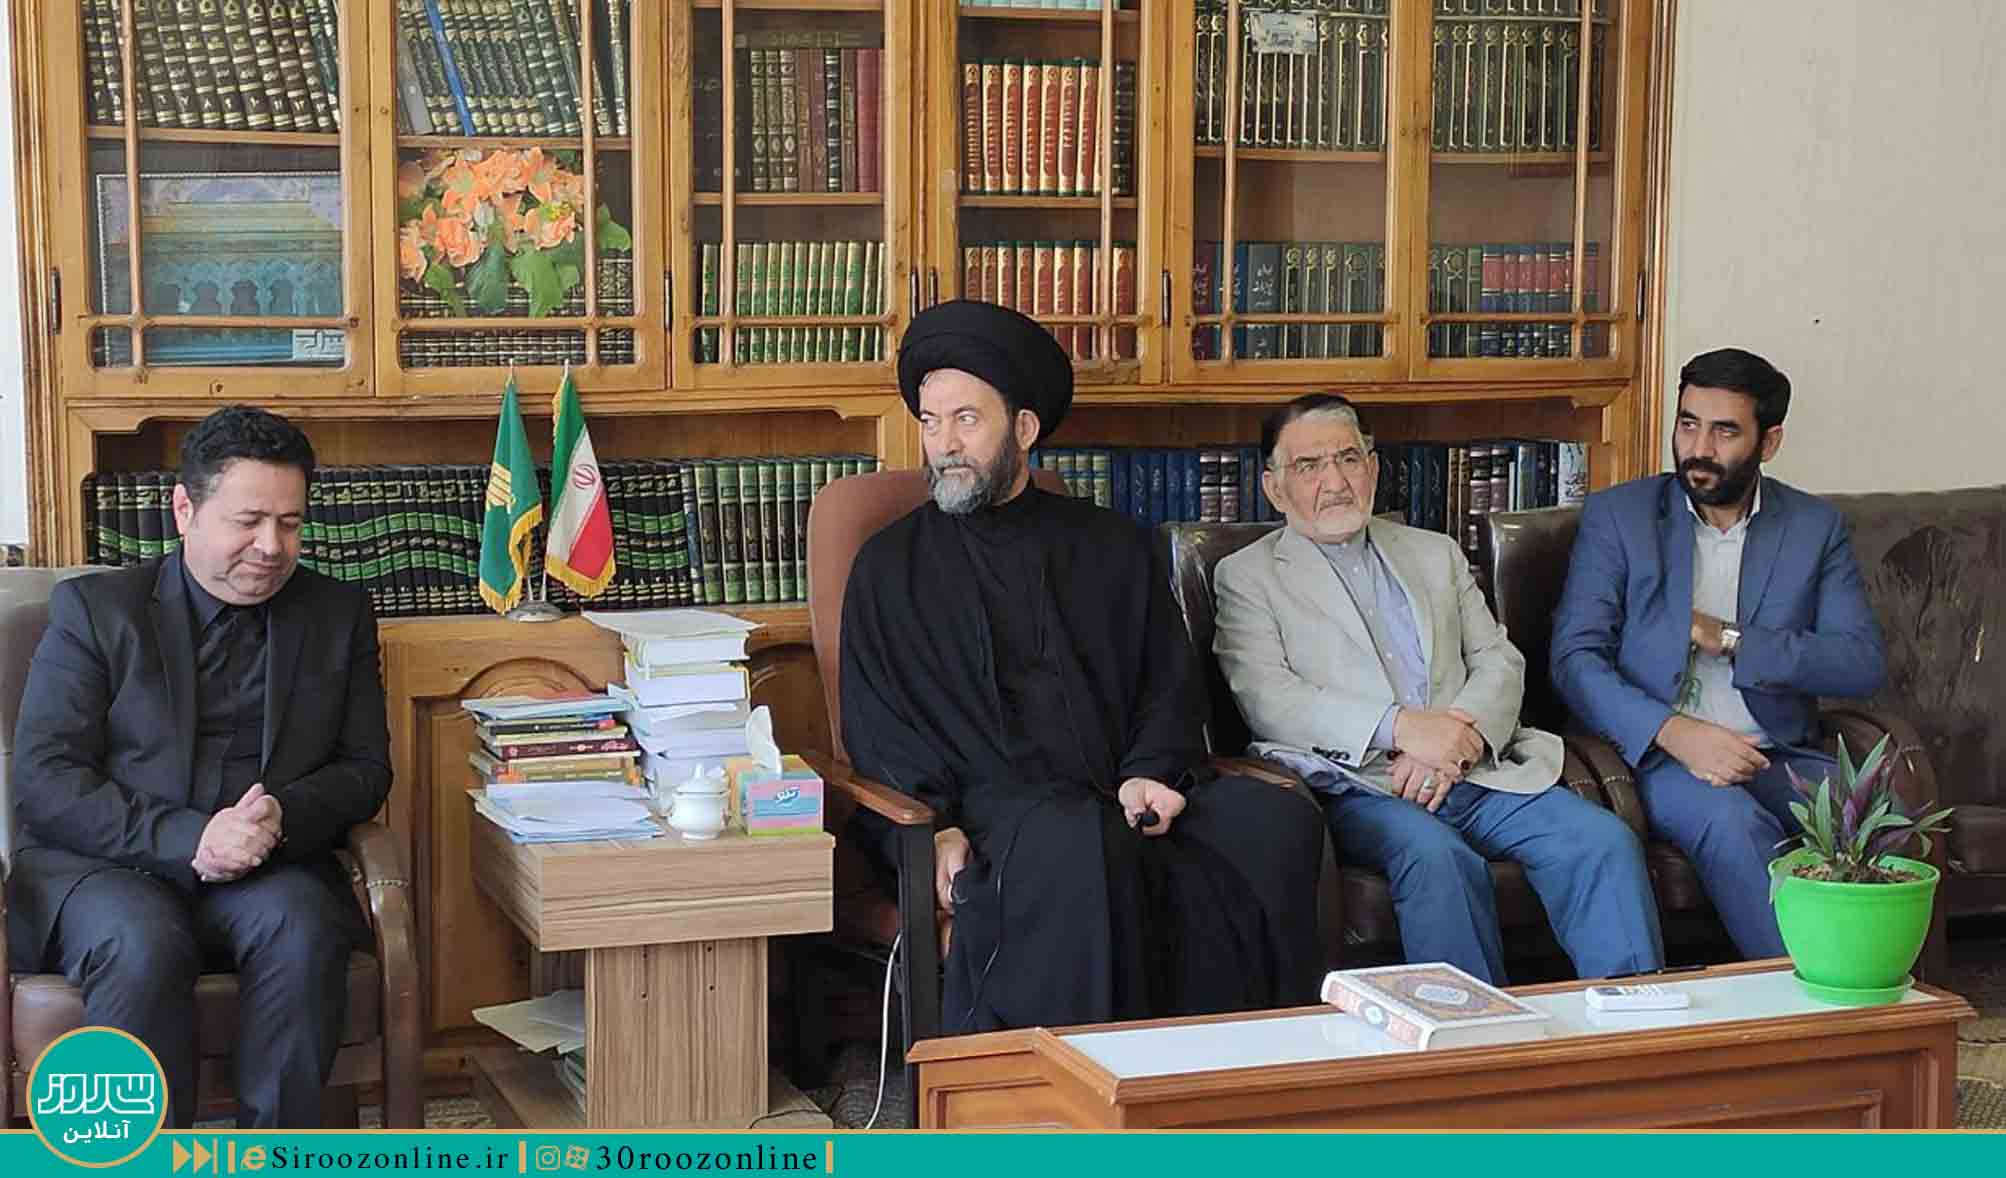 دیدار اعضای شورای عالی بسیج تجار و فعالان اقتصادی کشور با امام جمعه اردبیل